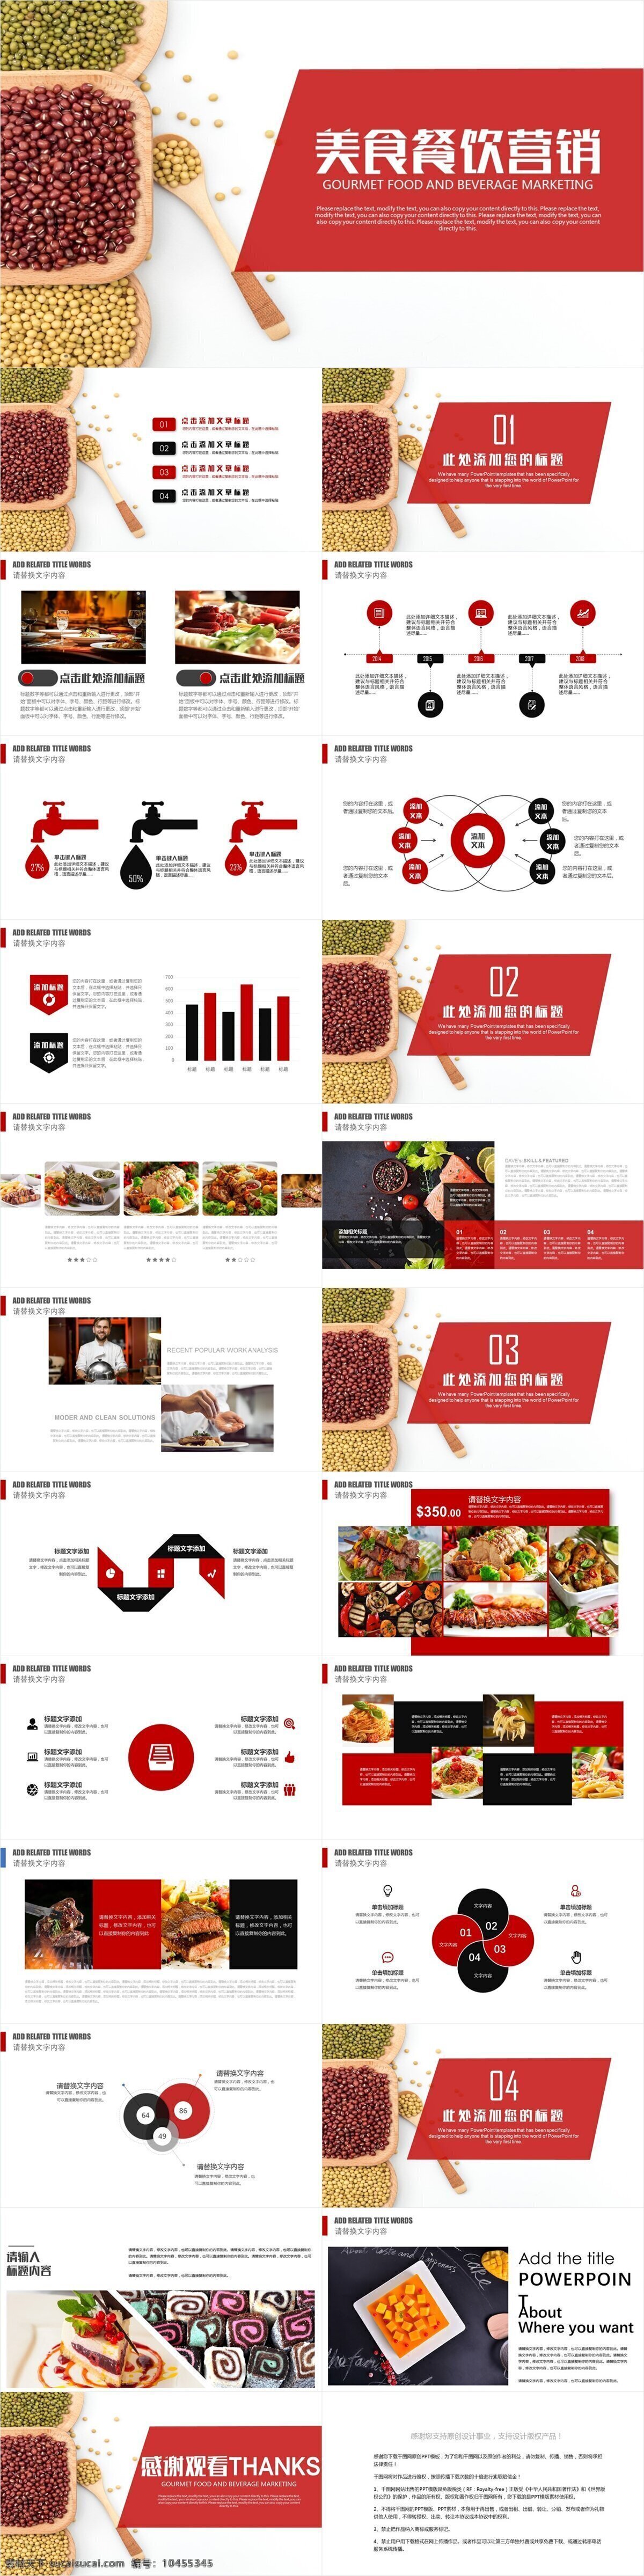 创意 美食 餐饮 营销 模板 画册 企业宣传 企业简介 美食餐饮 产品介绍 商务合作 策划